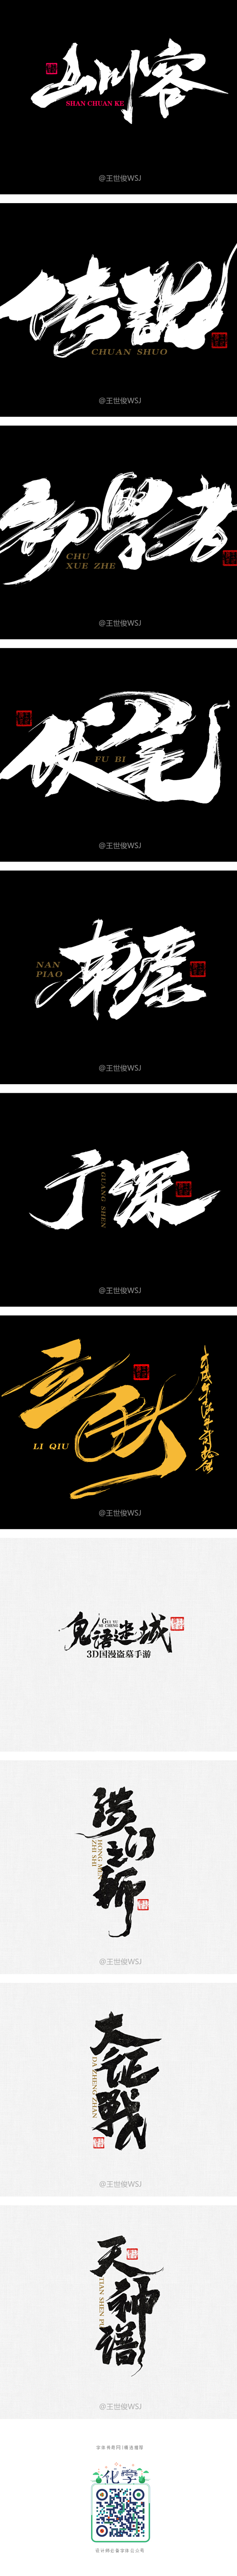 字娱字乐-字体传奇网-中国首个字体品牌设...